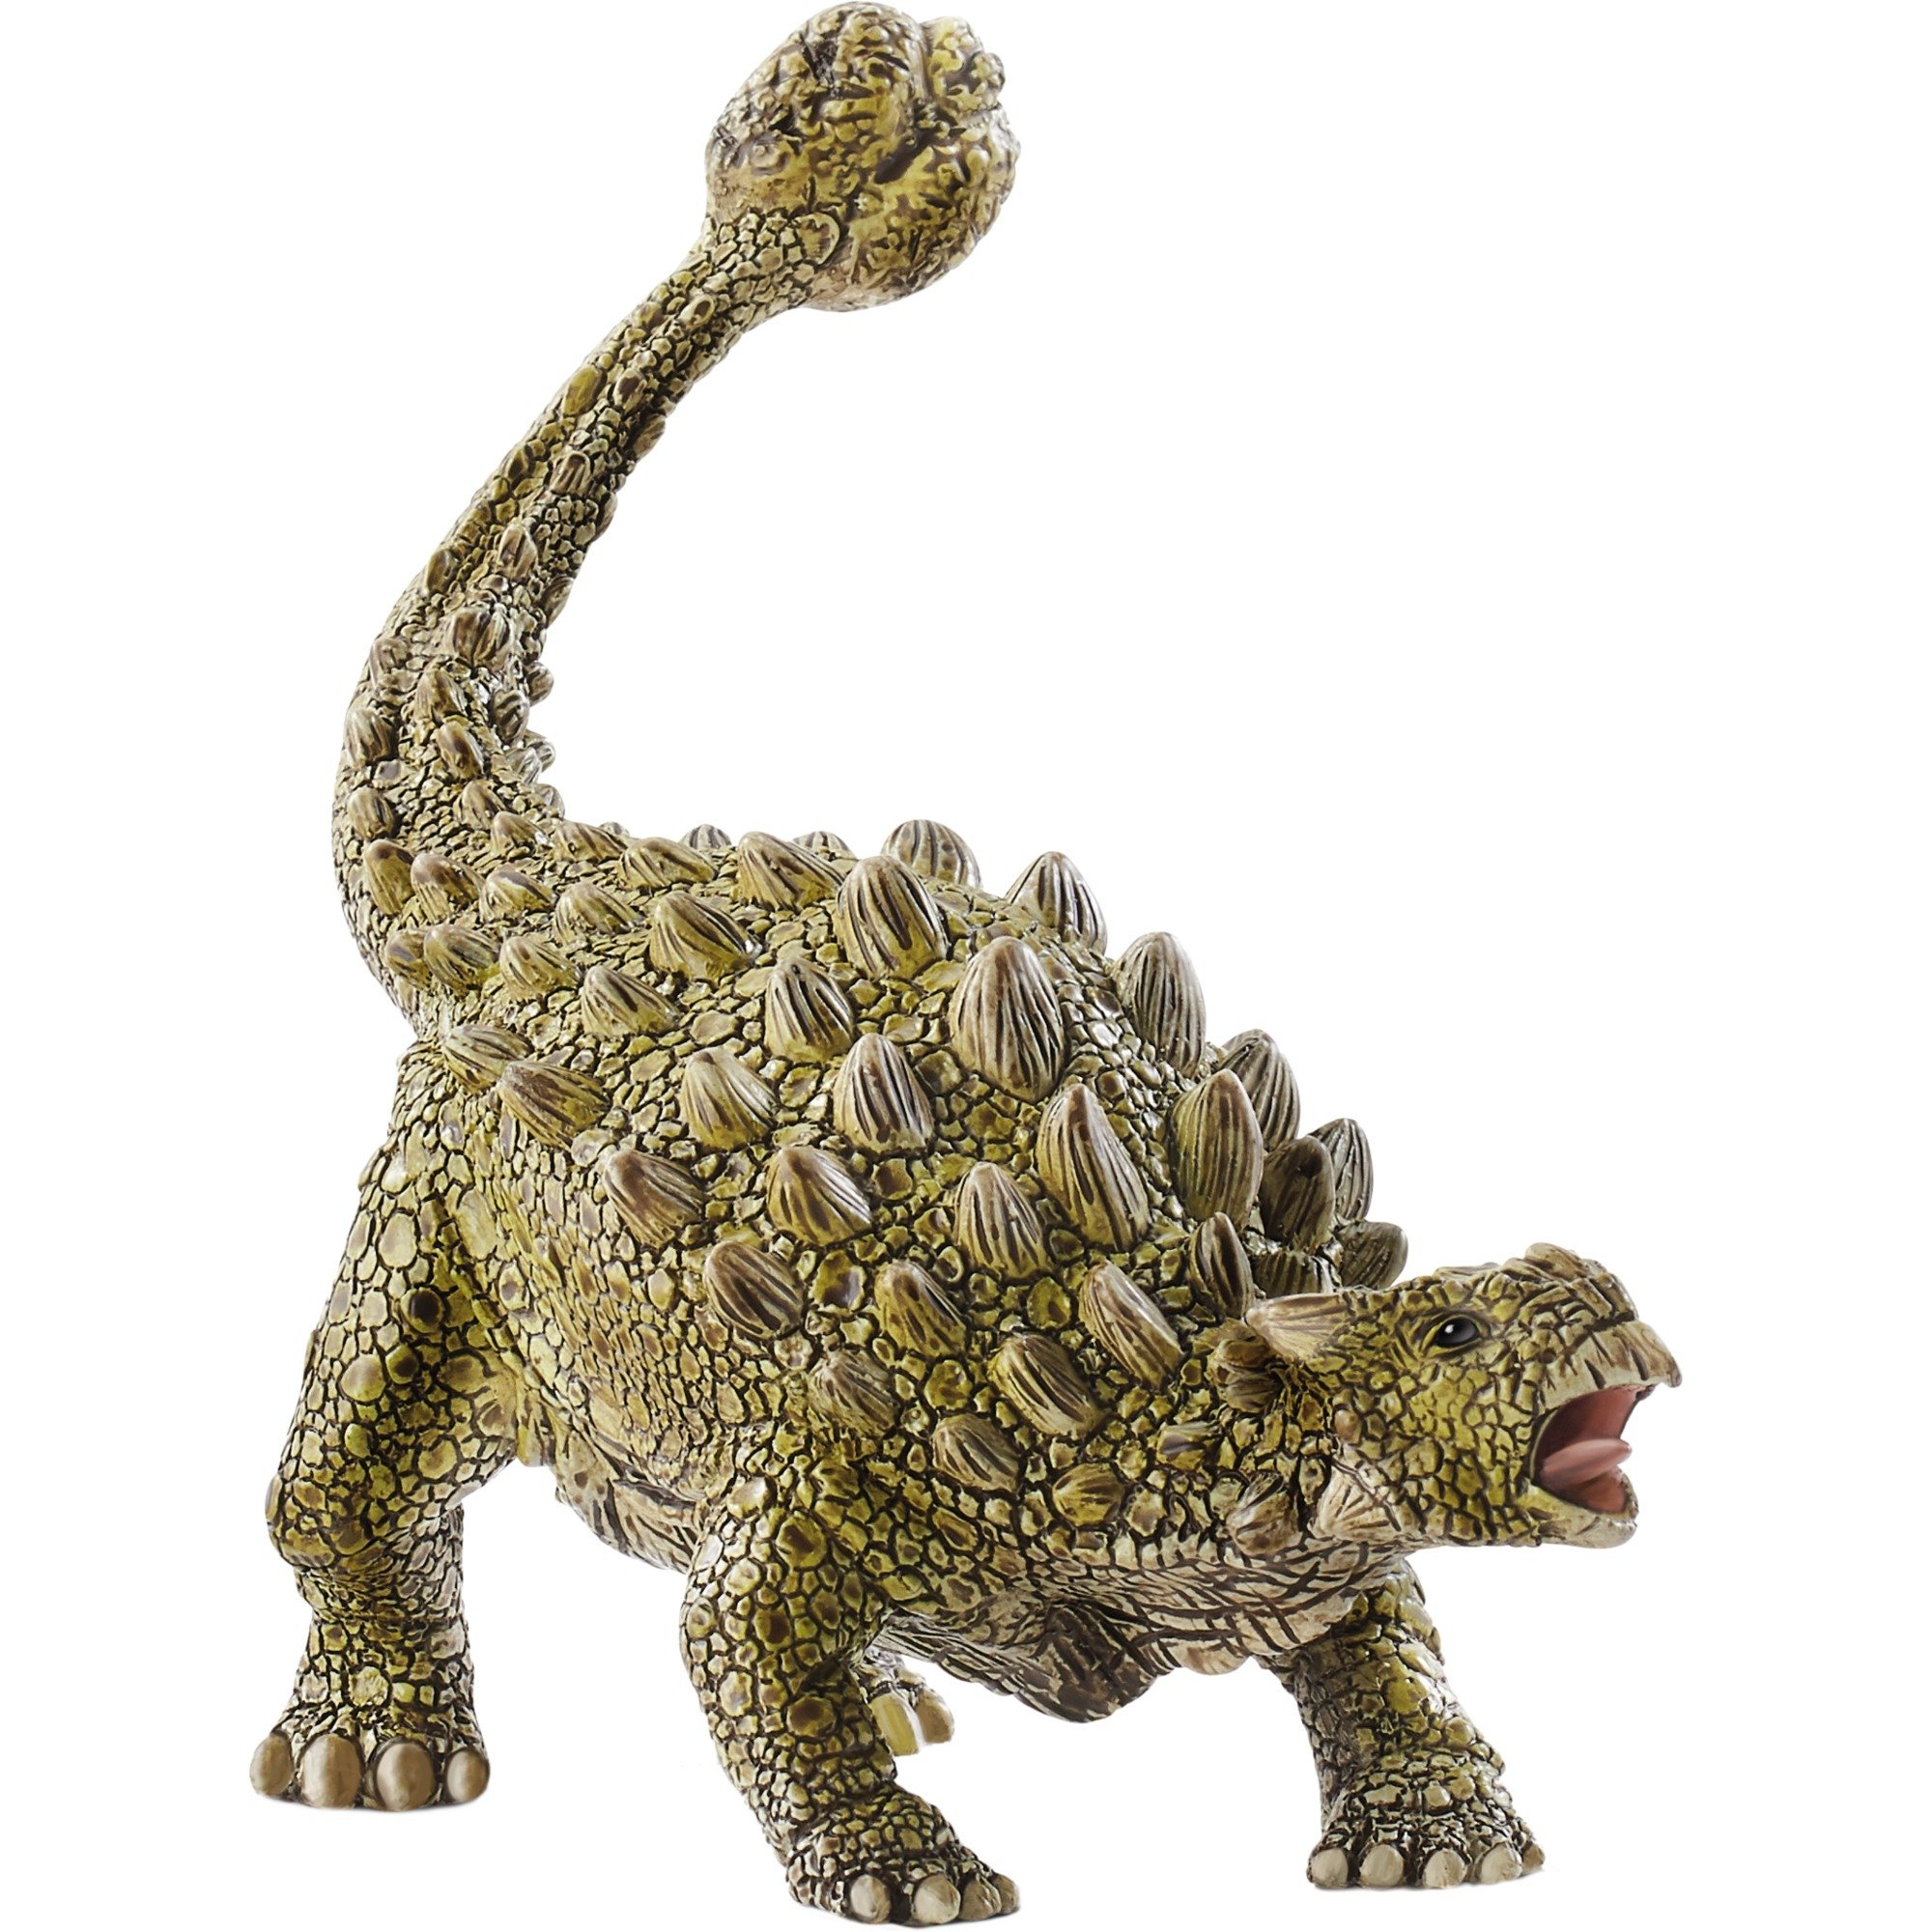 Image of Alternate - Dinosaurs Ankylosaurus, Spielfigur online einkaufen bei Alternate